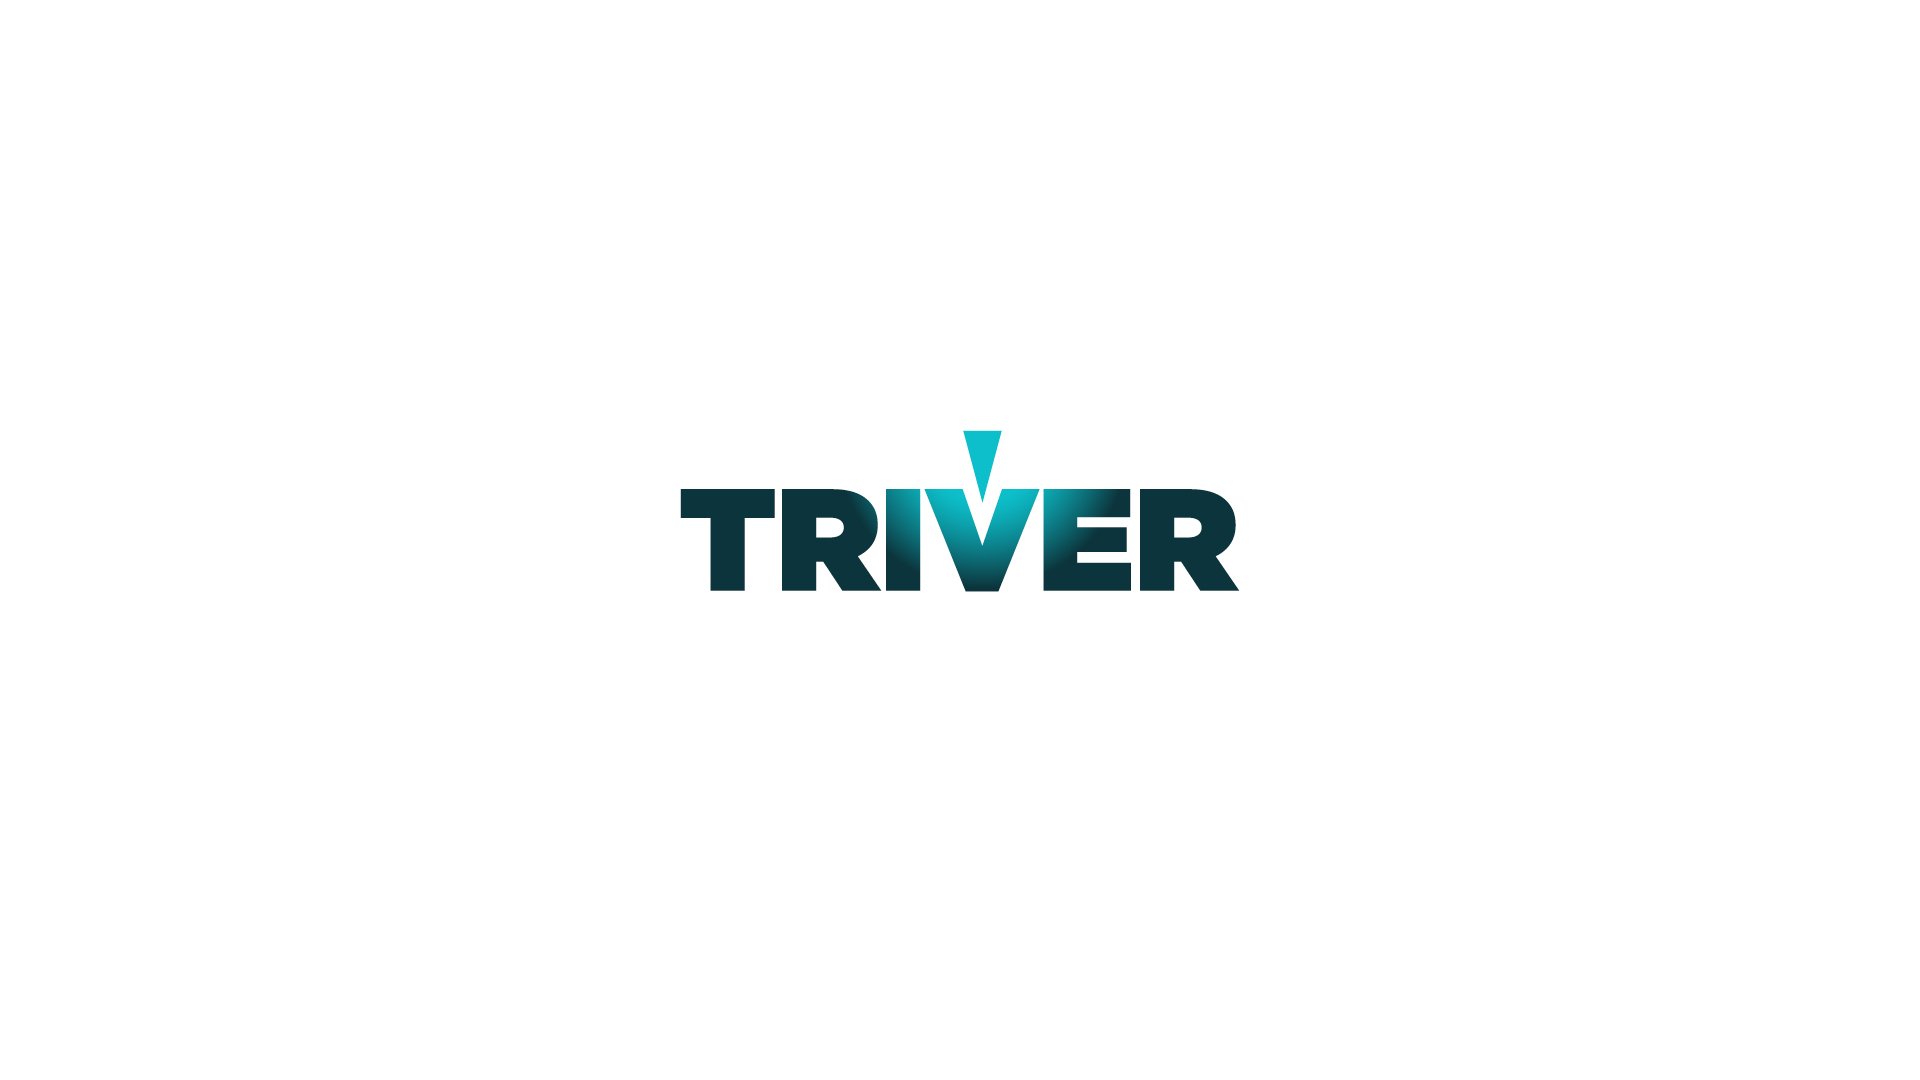 TRIVER_logo.jpg